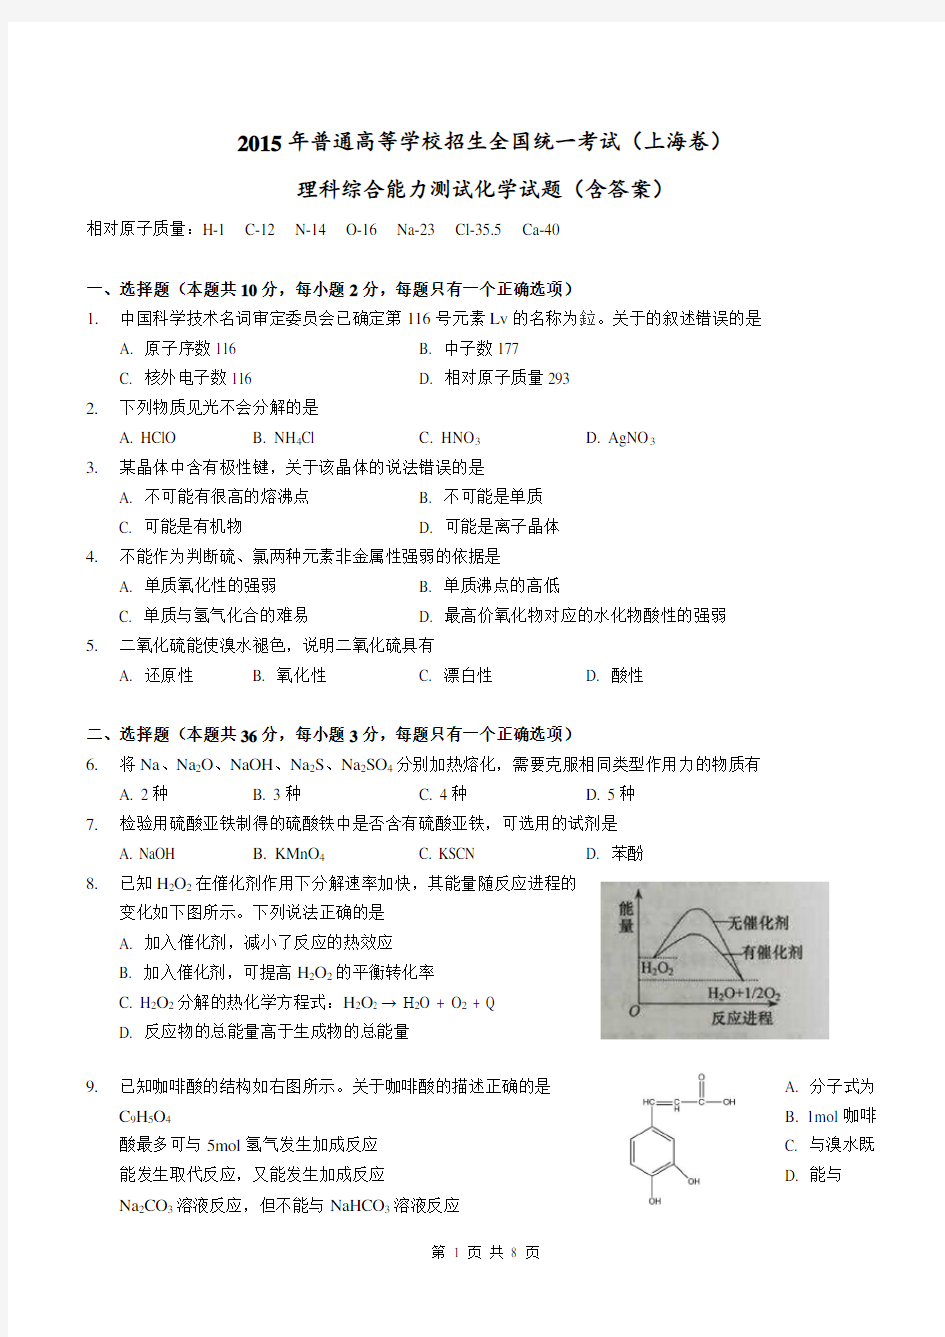 (完整word)2015年高考全国统一考试(上海卷)理综(化学部分)答案解析(正式版)